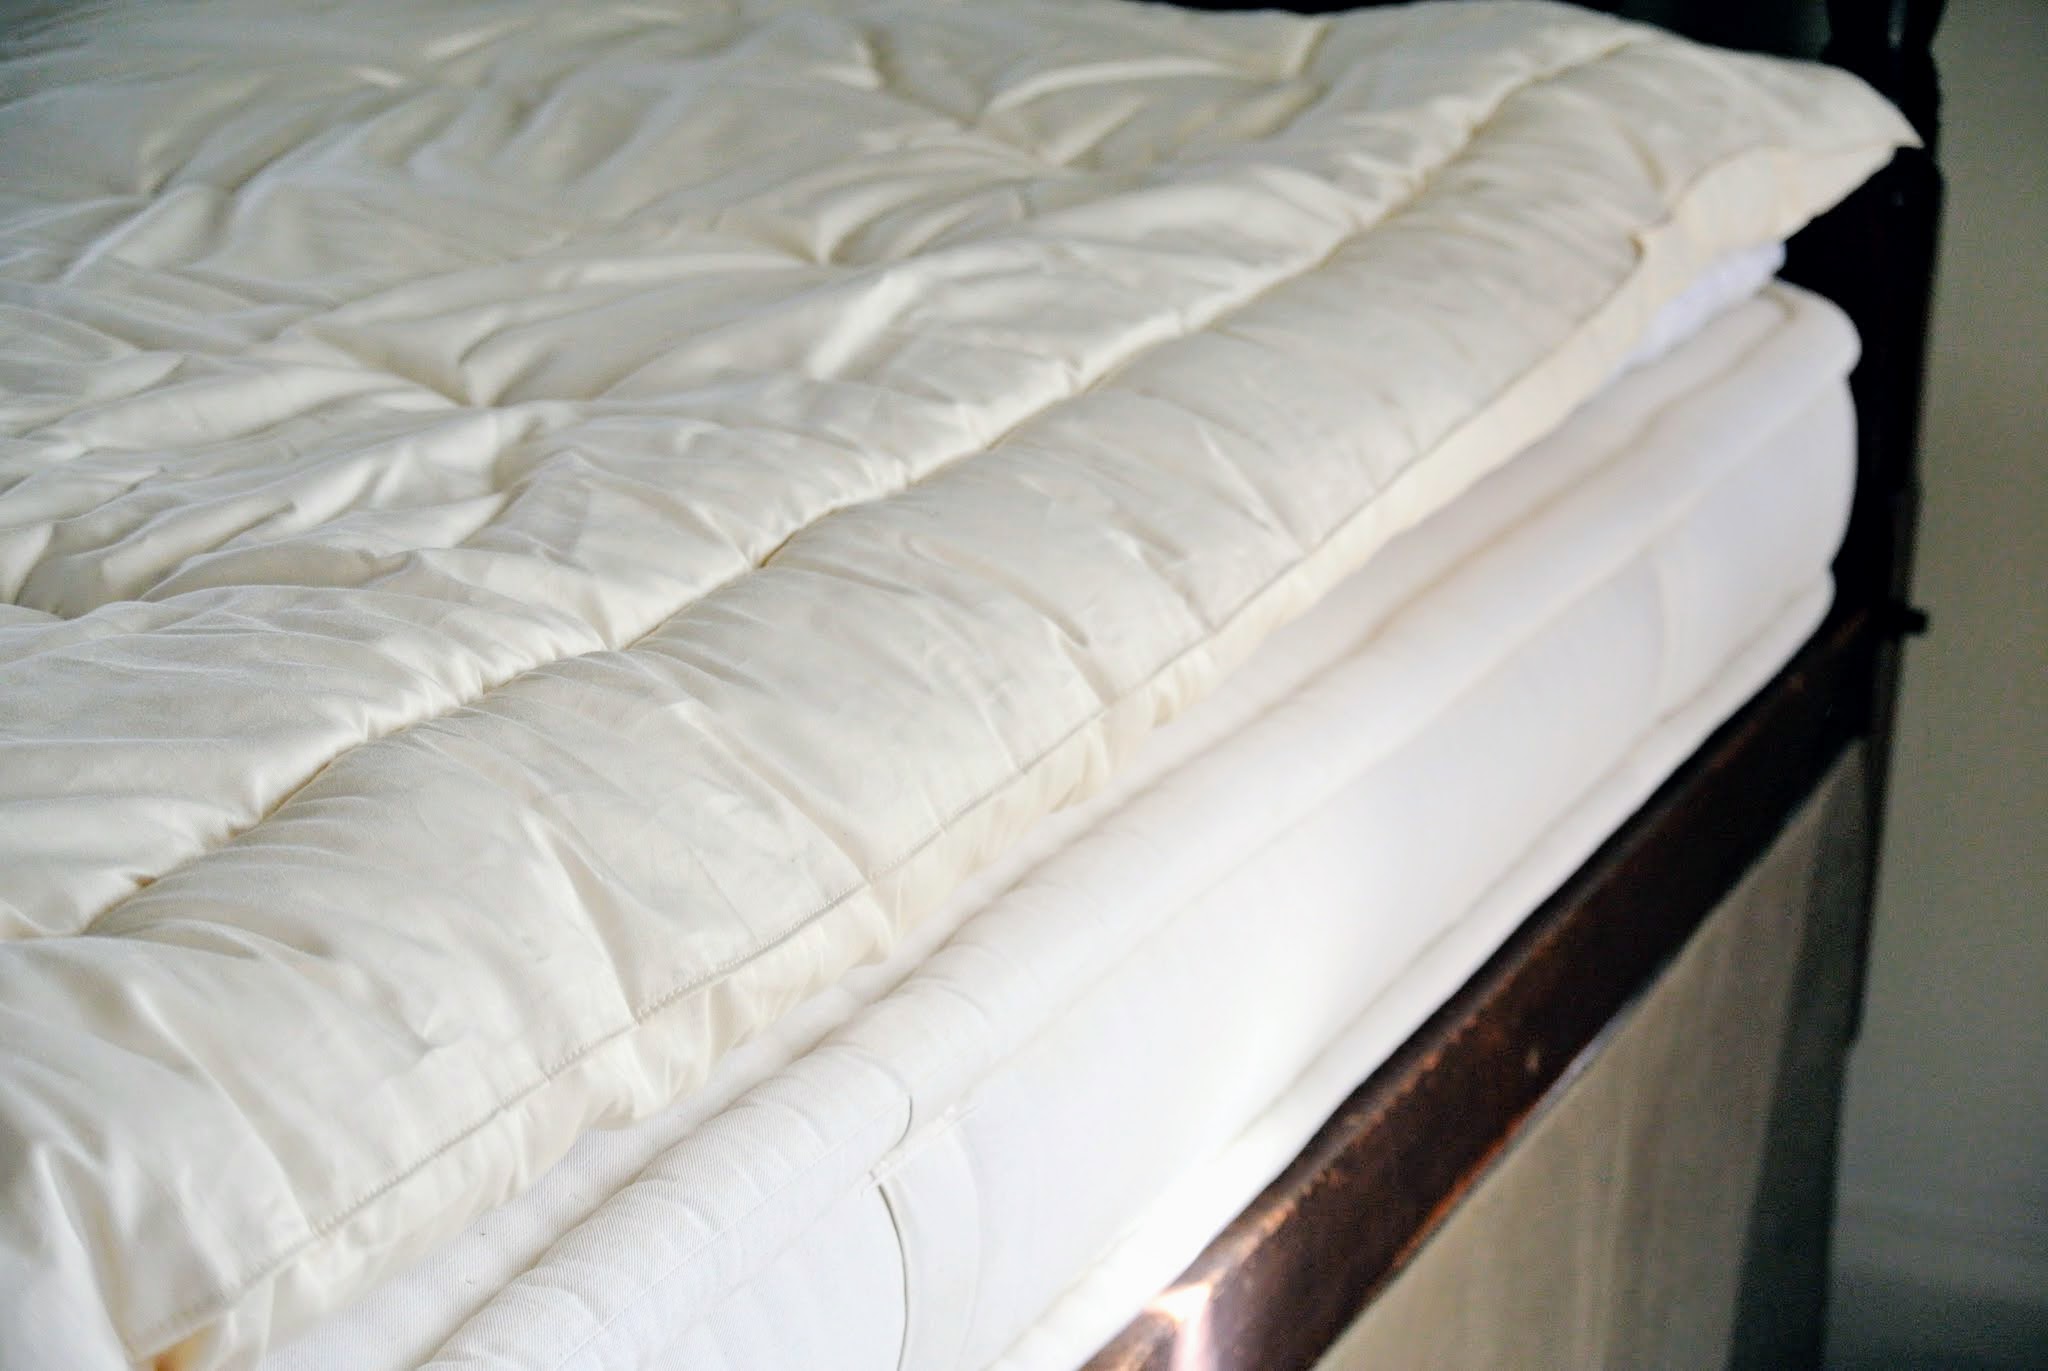 moisture wicking mattress topper